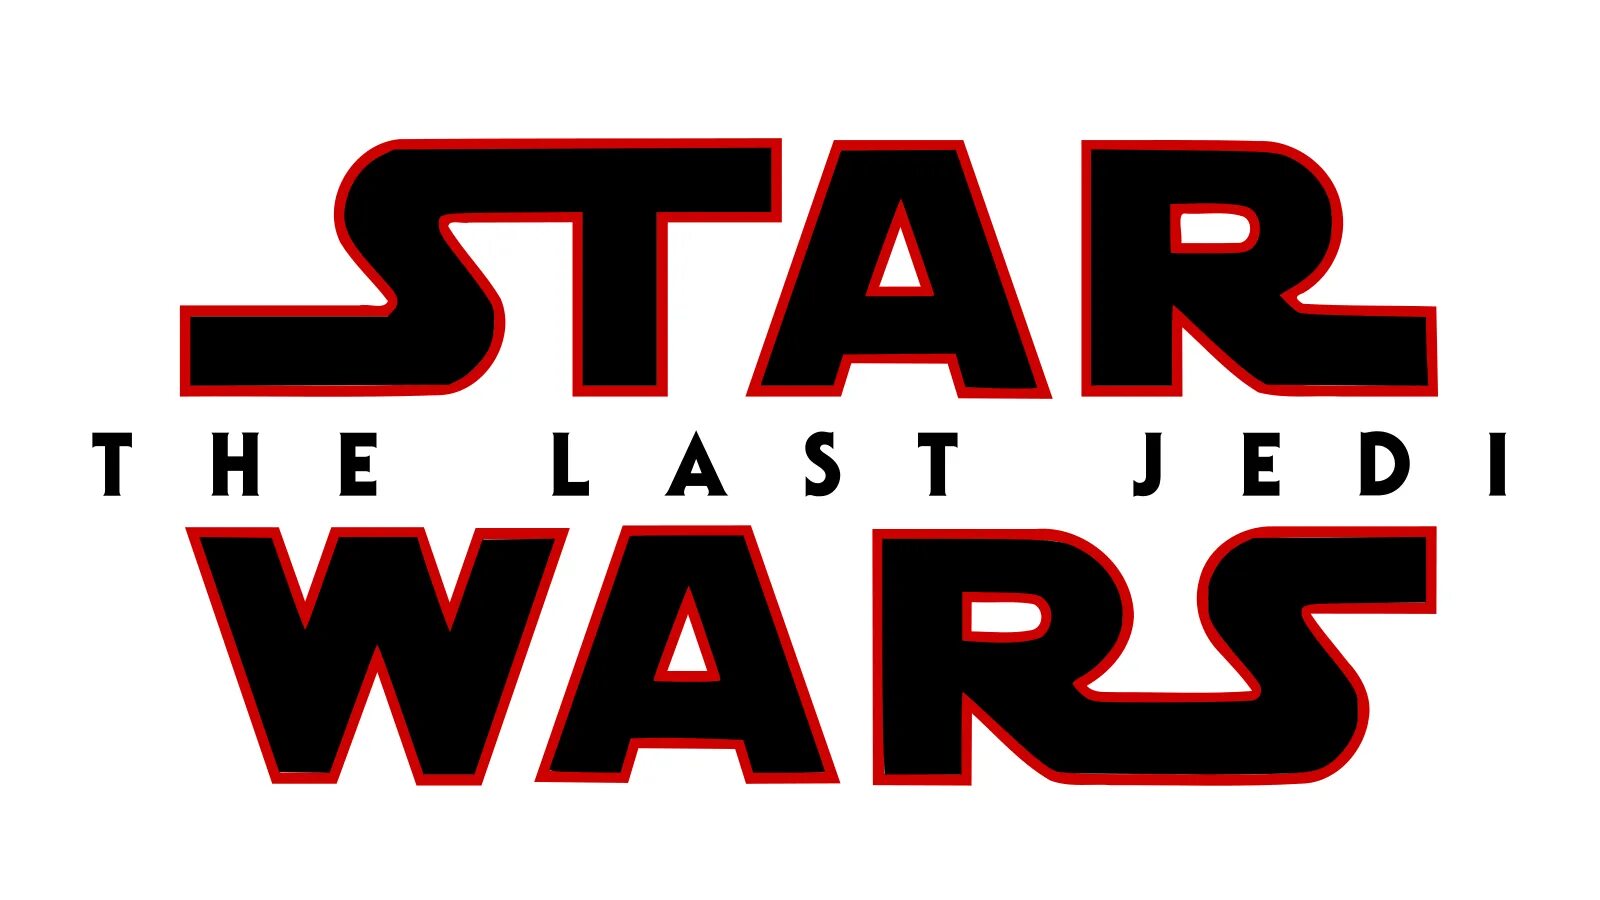 Звездные войны на английском с субтитрами. Star Wars - the last Jedi. Звездные войны логотип. Star Wars надпись. Надпись Стар ВАРС без фона.